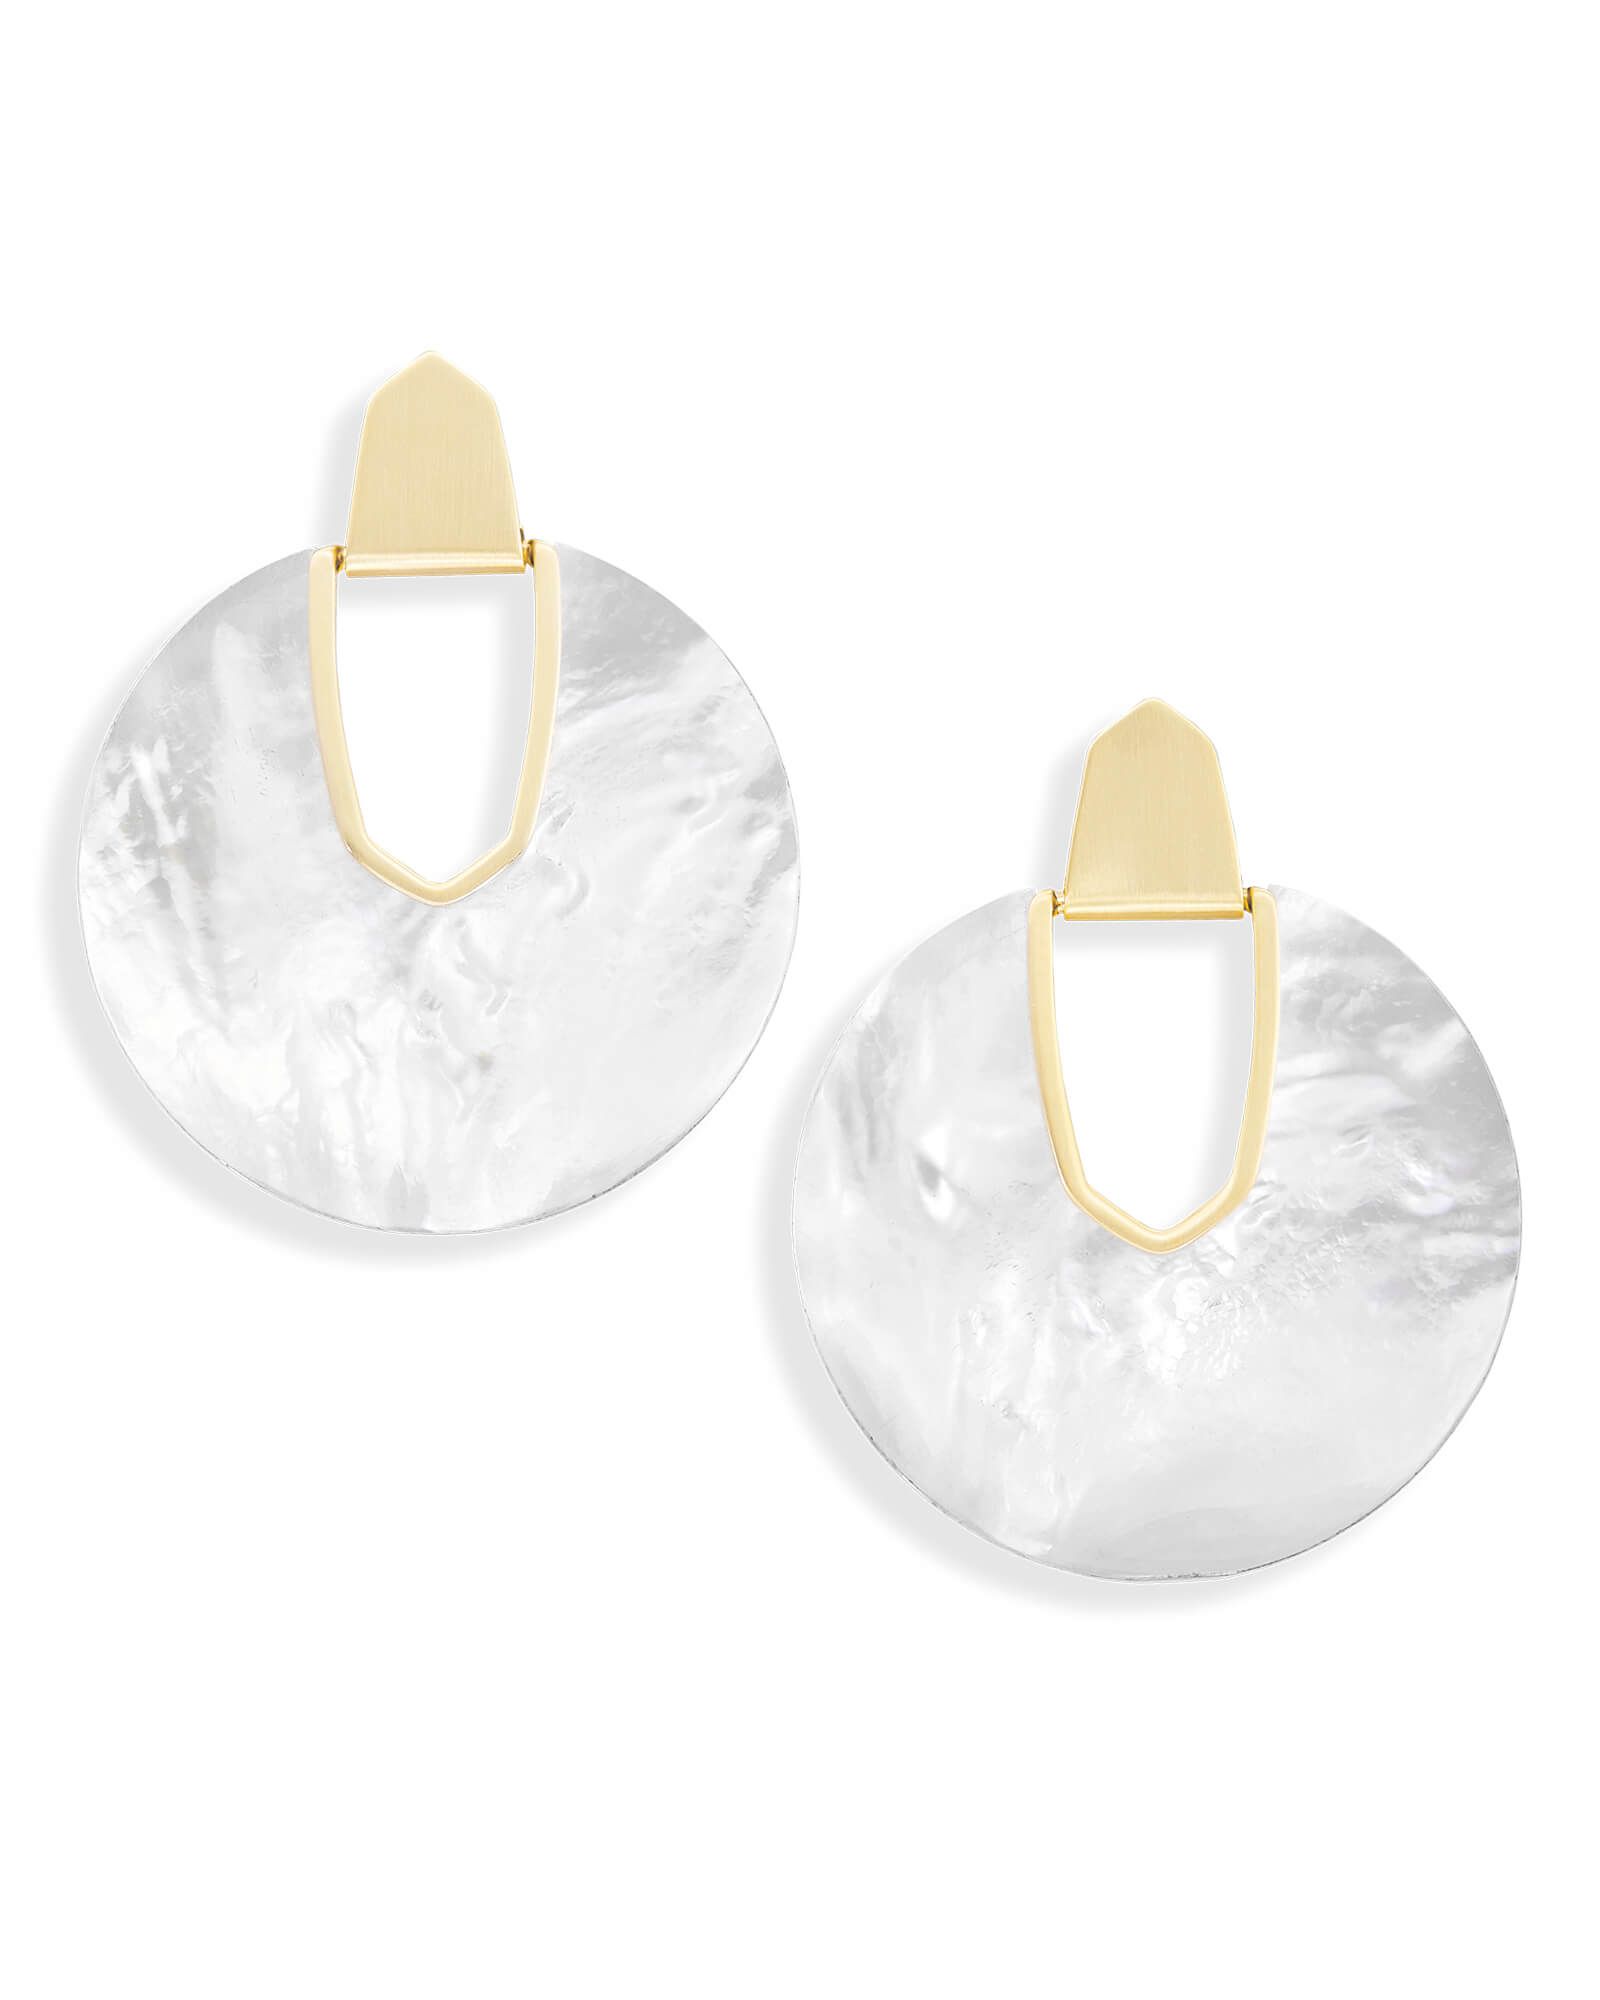 Diane Gold Earrings in Ivory Pearl | Kendra Scott